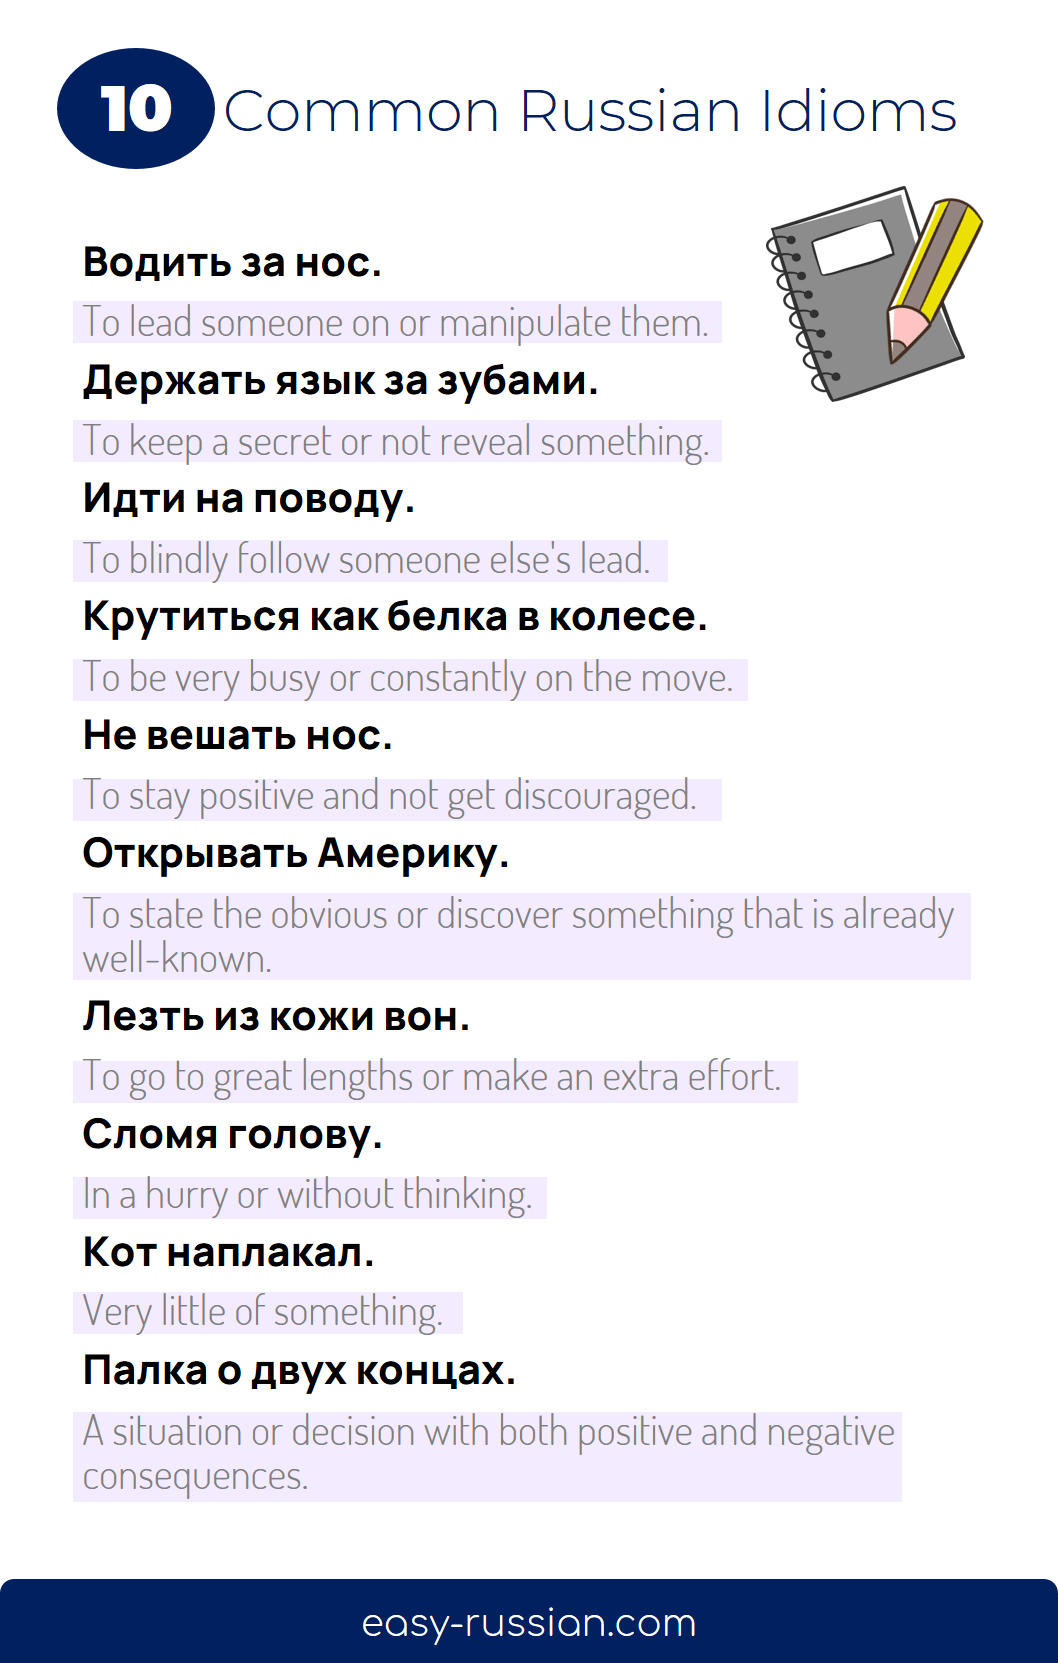 Common Russian idioms